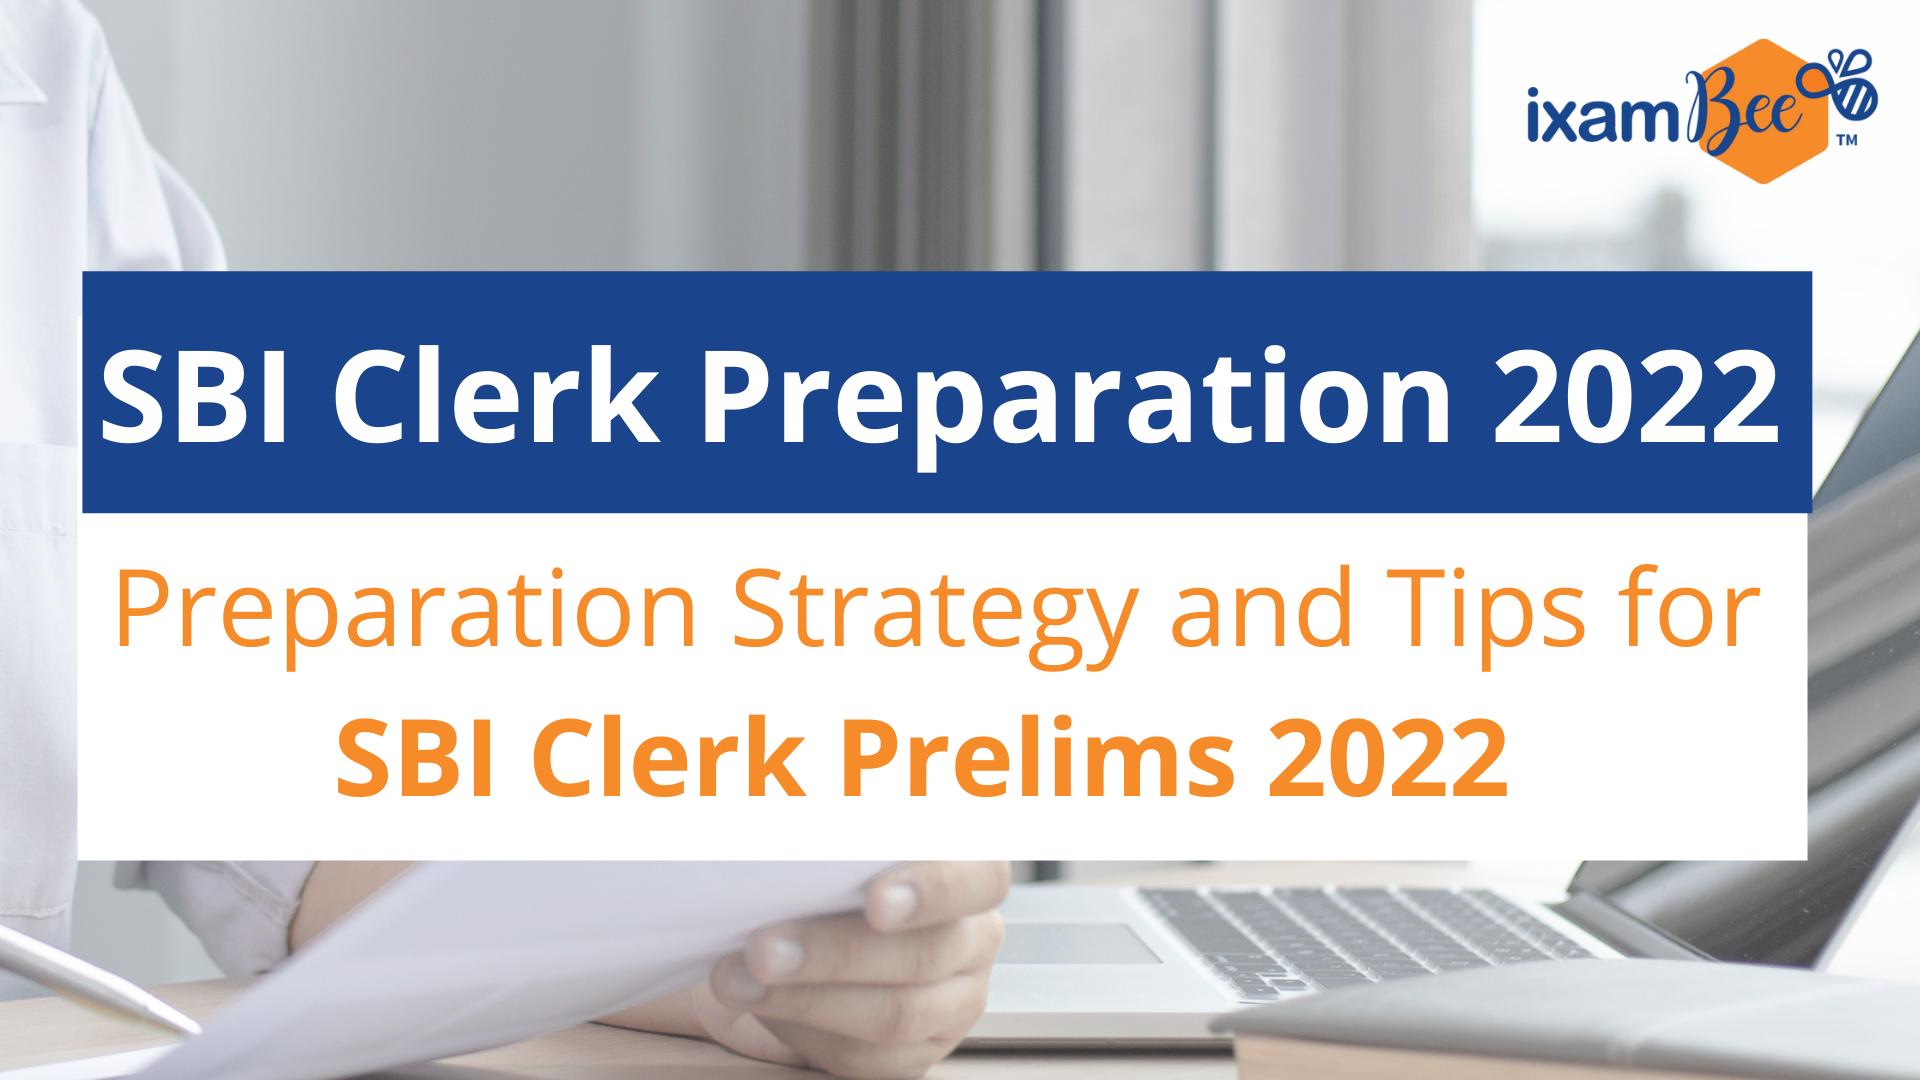 SBI Clerk Preparation 2022